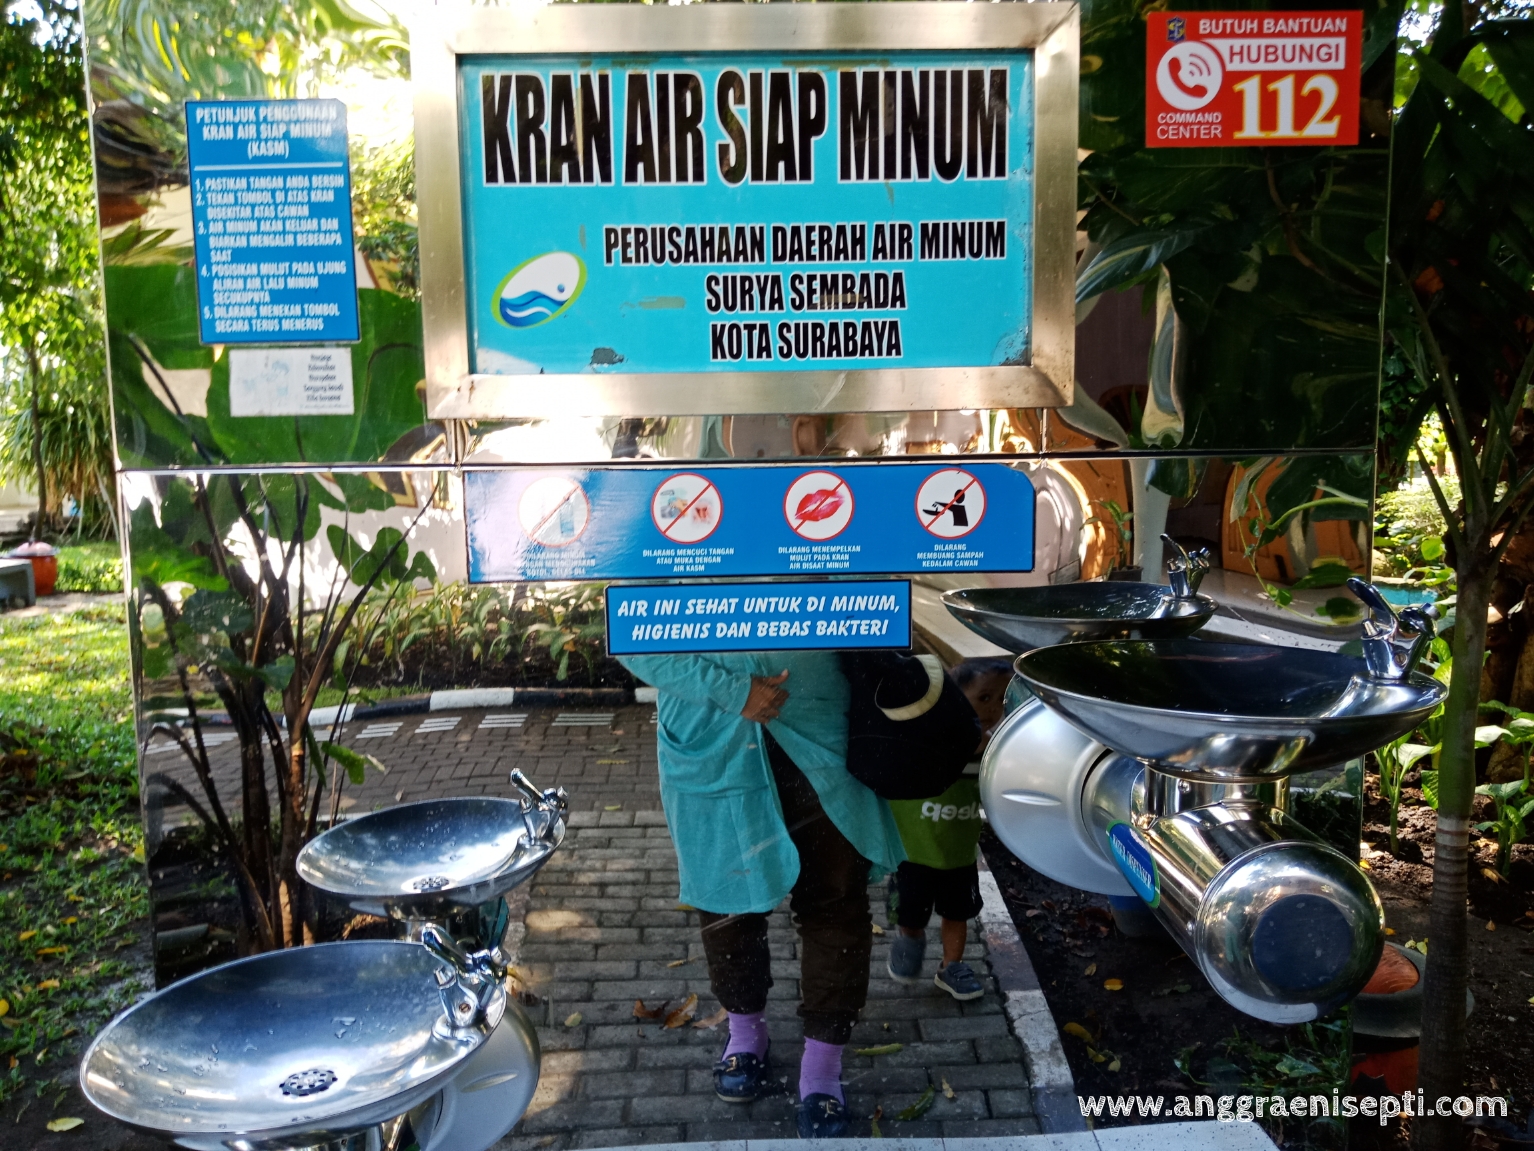 Jalan-jalan ke Kebun Bibit Wonorejo Surabaya - Anggraeni Septi